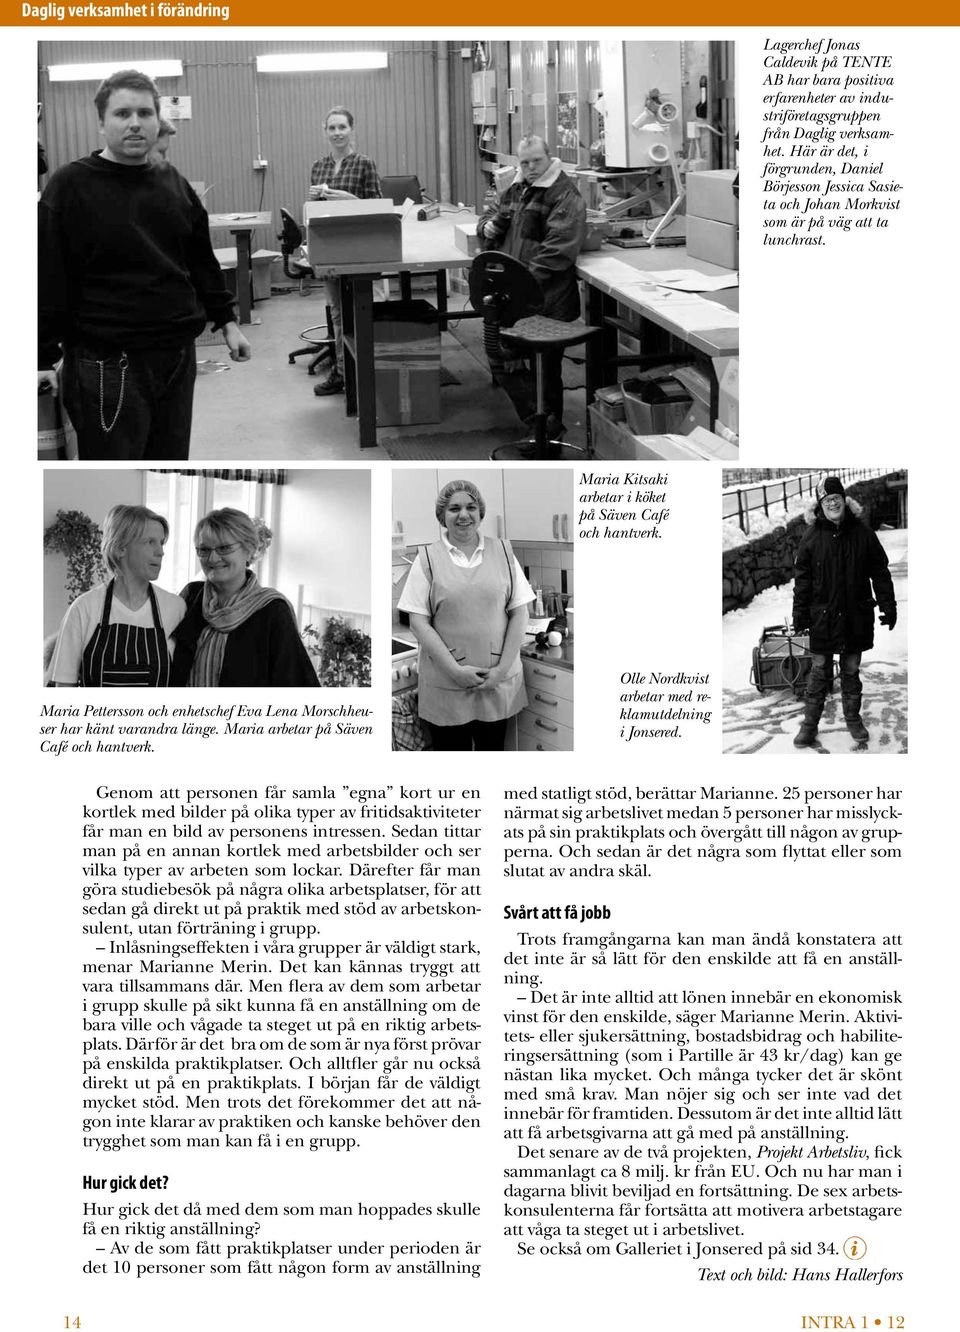 Maria Pettersson och enhetschef Eva Lena Morschheuser har känt varandra länge. Maria arbetar på Säven Café och hantverk. Olle Nordkvist arbetar med reklamutdelning i Jonsered.